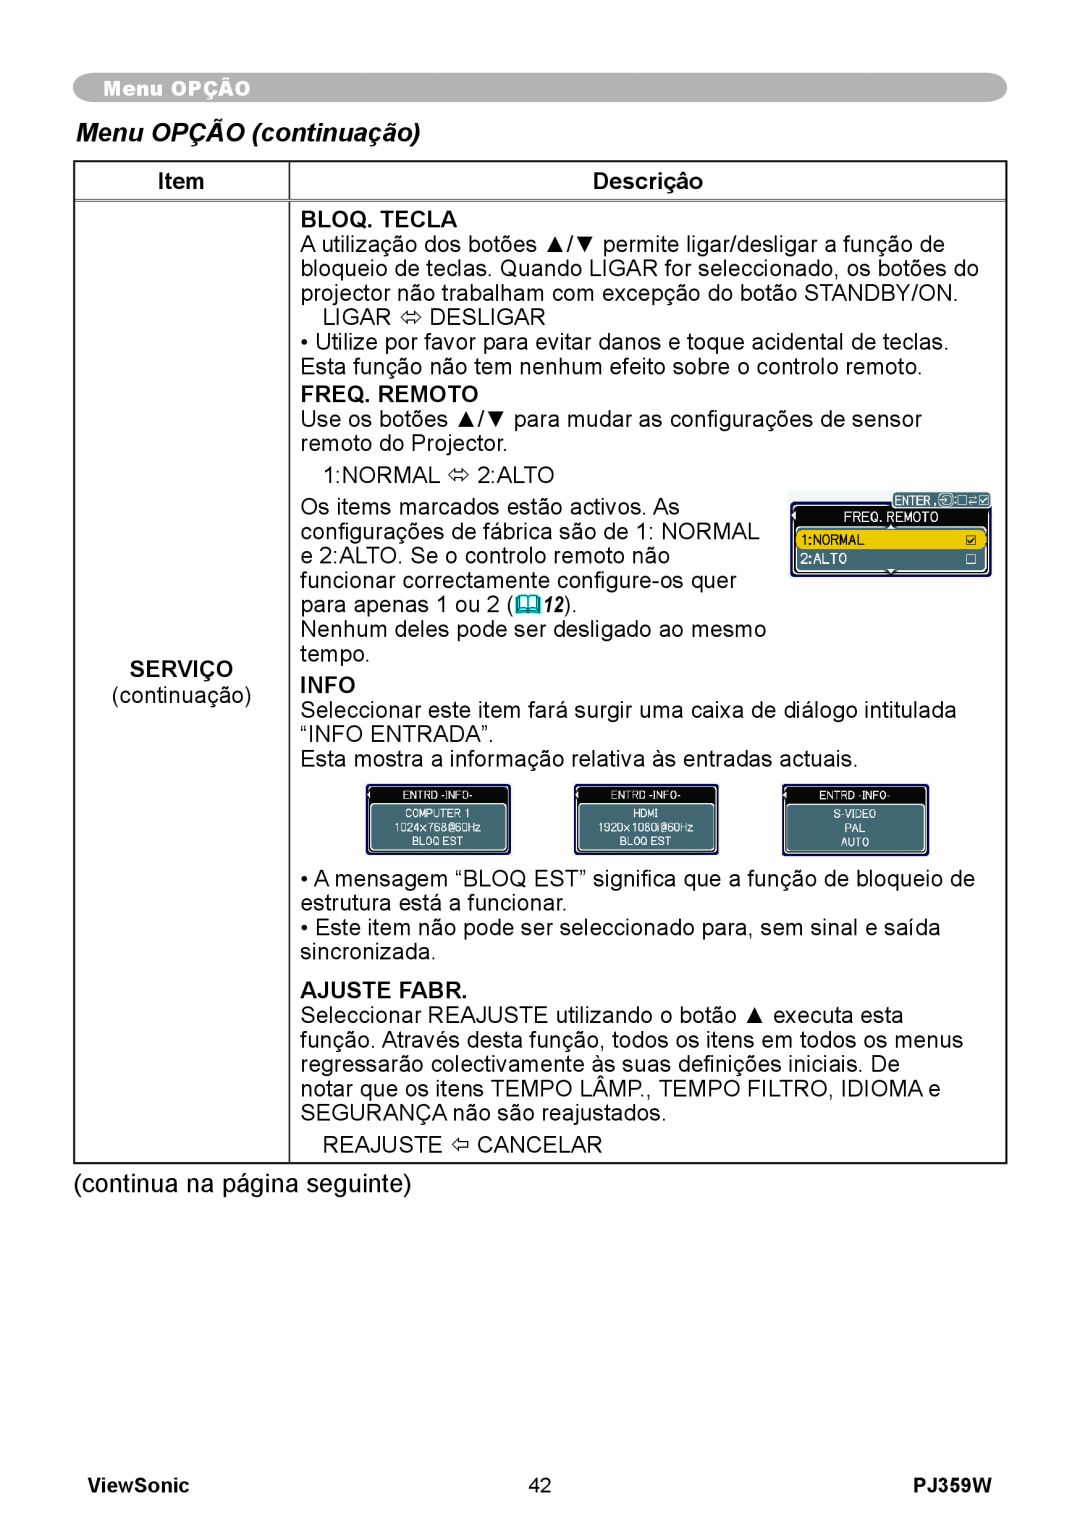 ViewSonic PJ359 manual Menu OPÇÃO continuação, Descriçâo, Bloq. Tecla, Freq. Remoto, Serviço, Info, Ajuste Fabr 